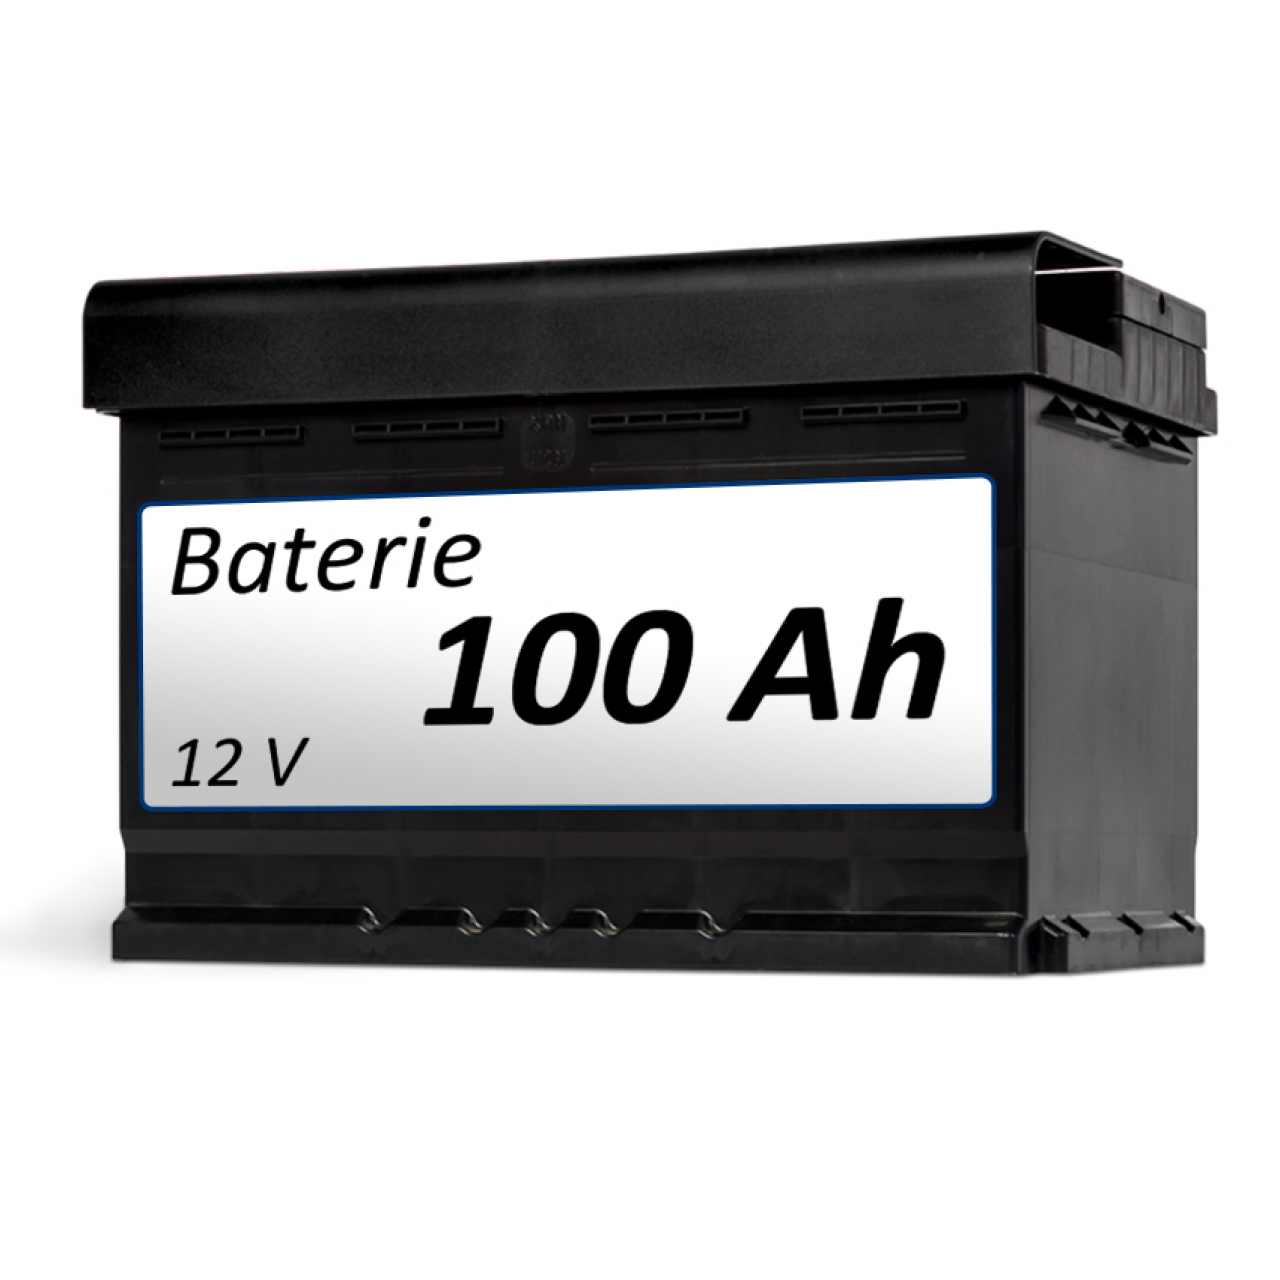 Baterie k elektrickému vozíku Baterie 100 Ah - samostatně foto